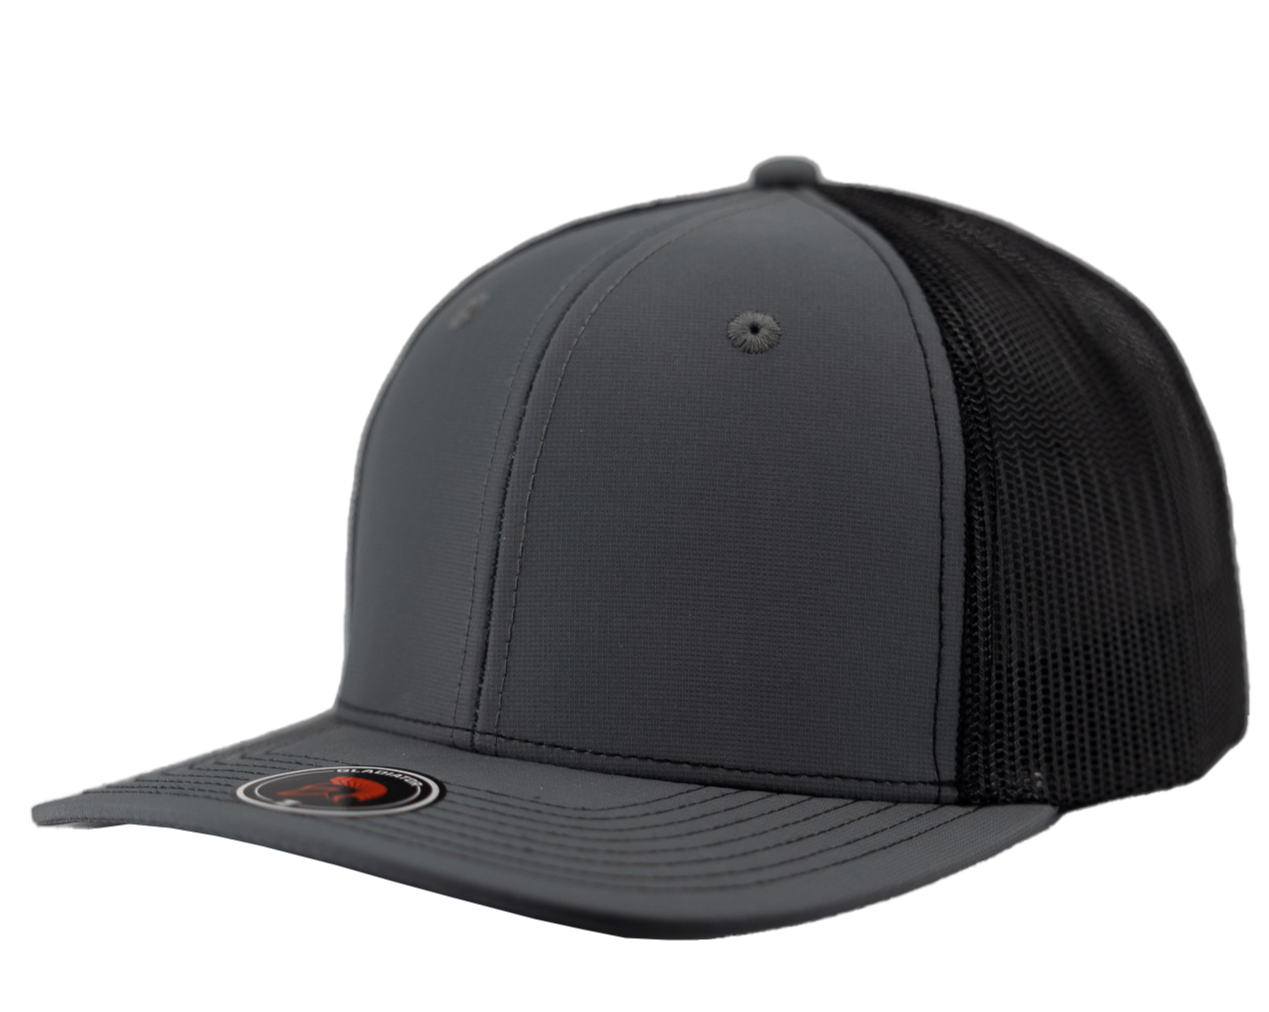 Gladiator-Water Repellent hat-Zapped Headwear-charcoal-black-Snapback-Custom hat-Zapped Headwear-side